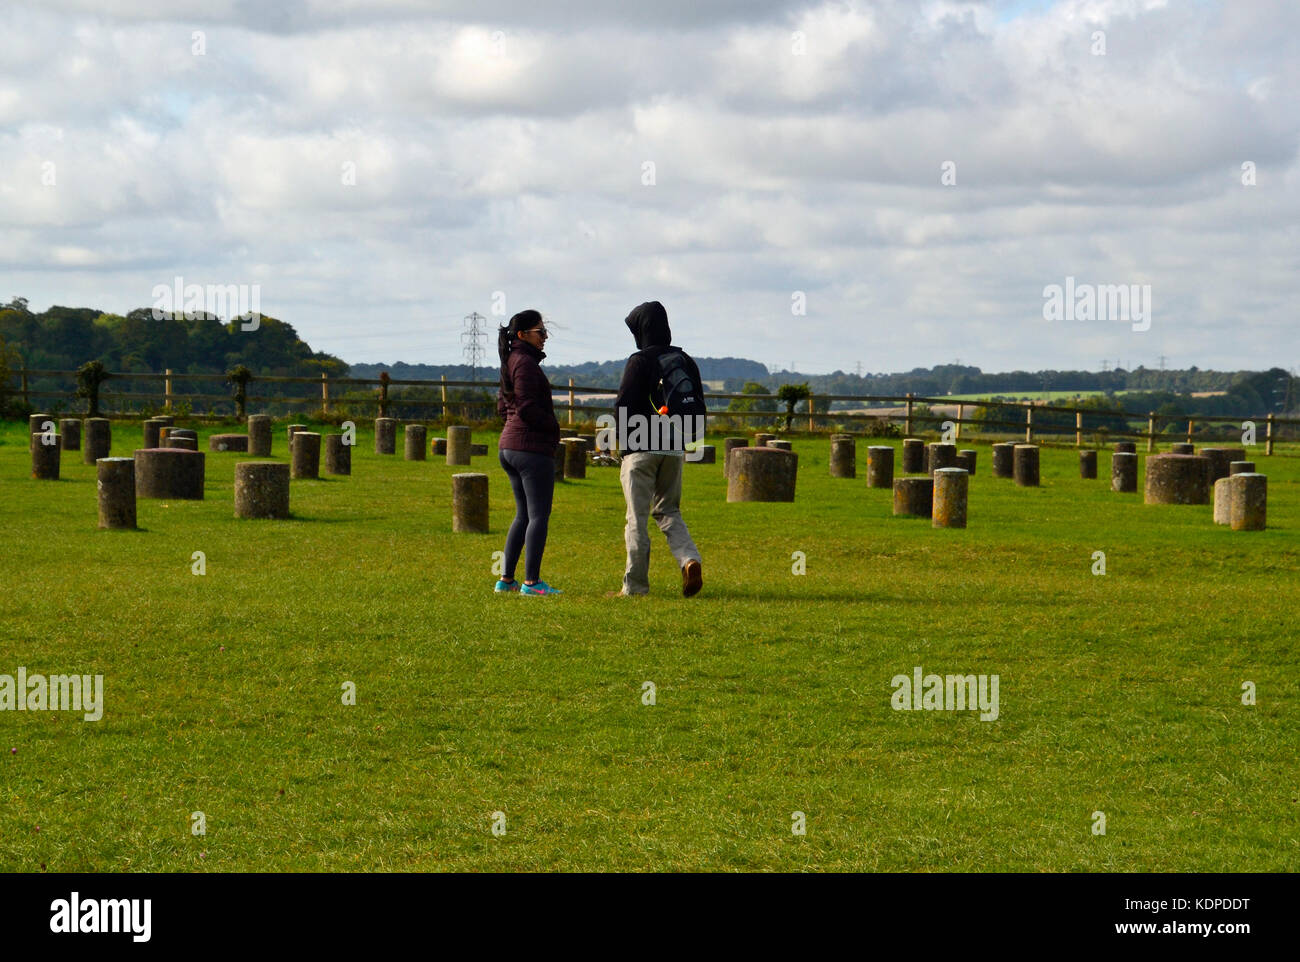 Personnes à Woodhenge Stone Circle, près de Durrington Walls ancienne colonie, Wiltshire, Angleterre, Royaume-Uni Banque D'Images